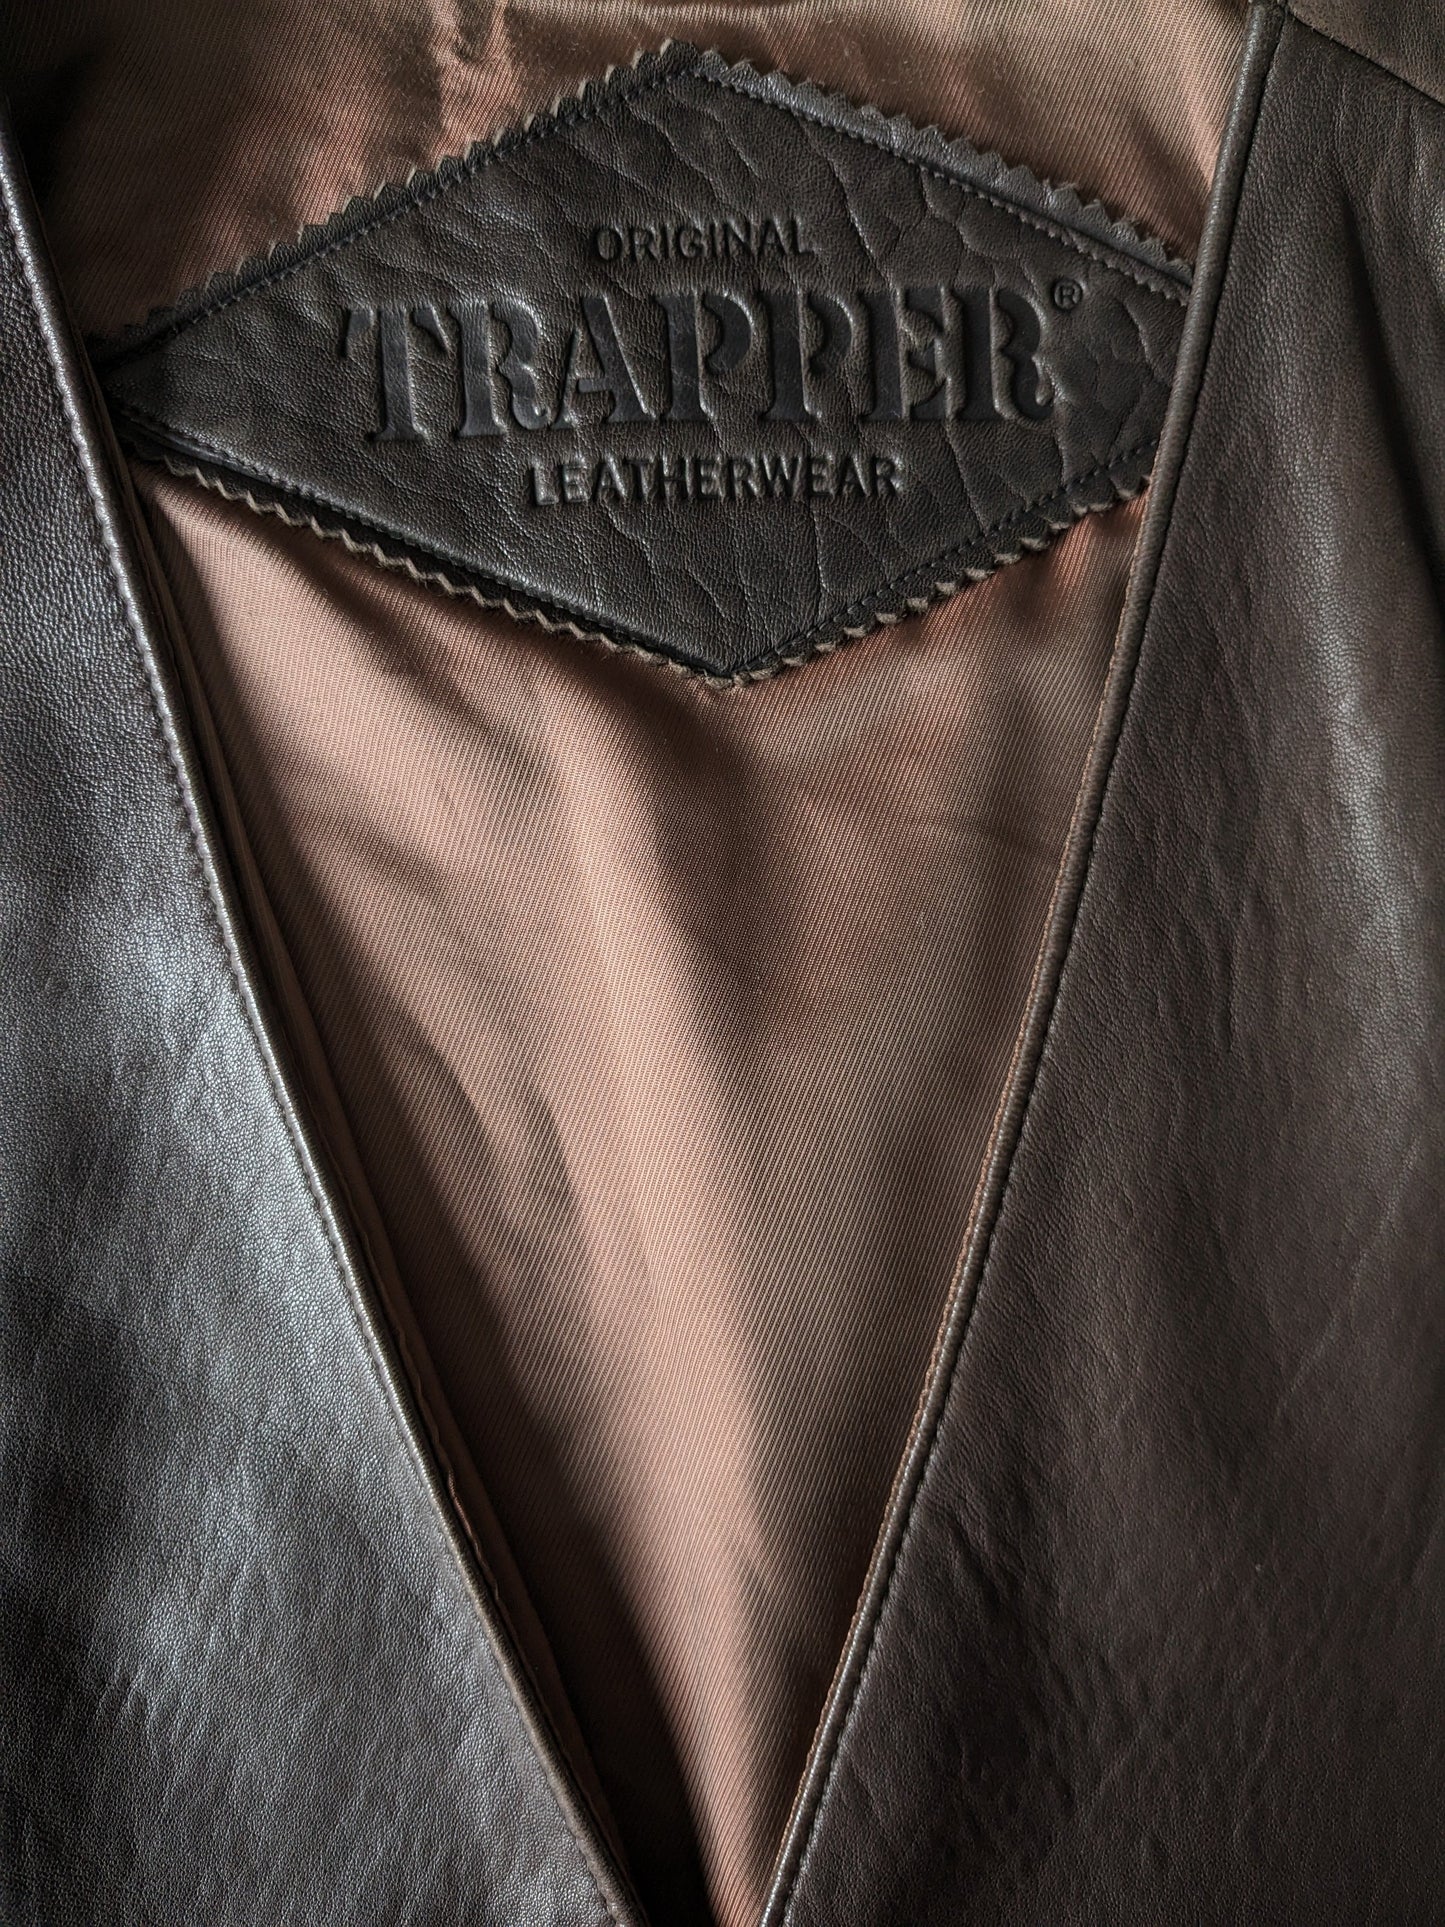 Trapper chaleco de cuero de doble lado. Marrón oscuro con 2 bolsillos internos. Tamaño 54/56 / xl